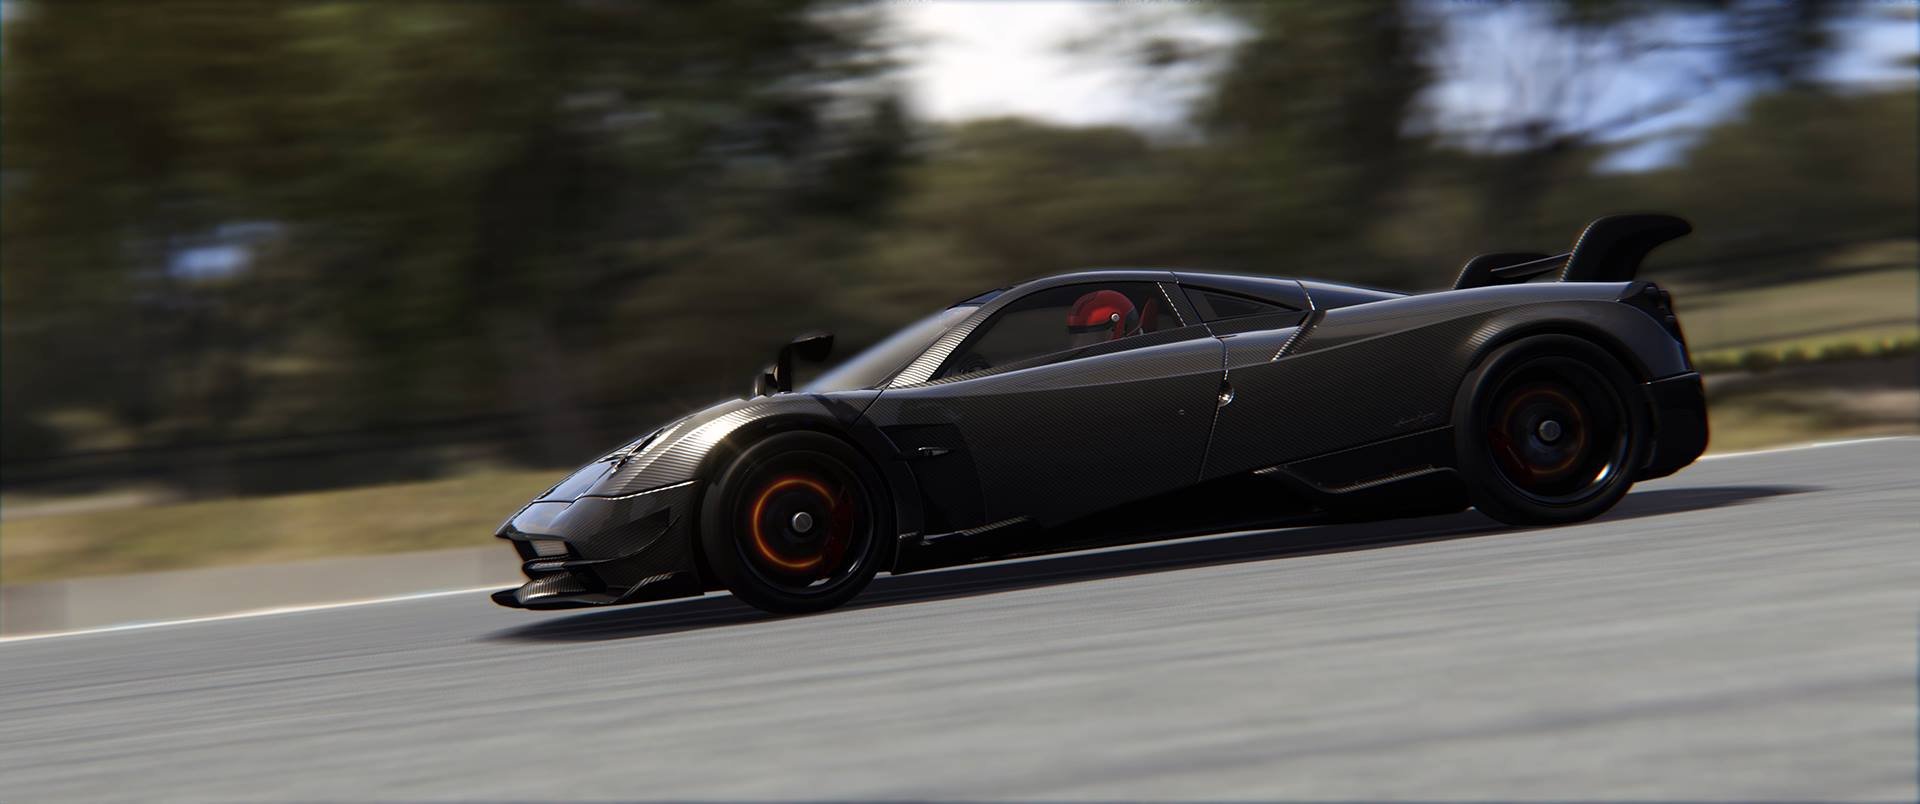 More information about "Assetto Corsa: la Lamborghini Huràcan Performante del Bonus Pack 3"